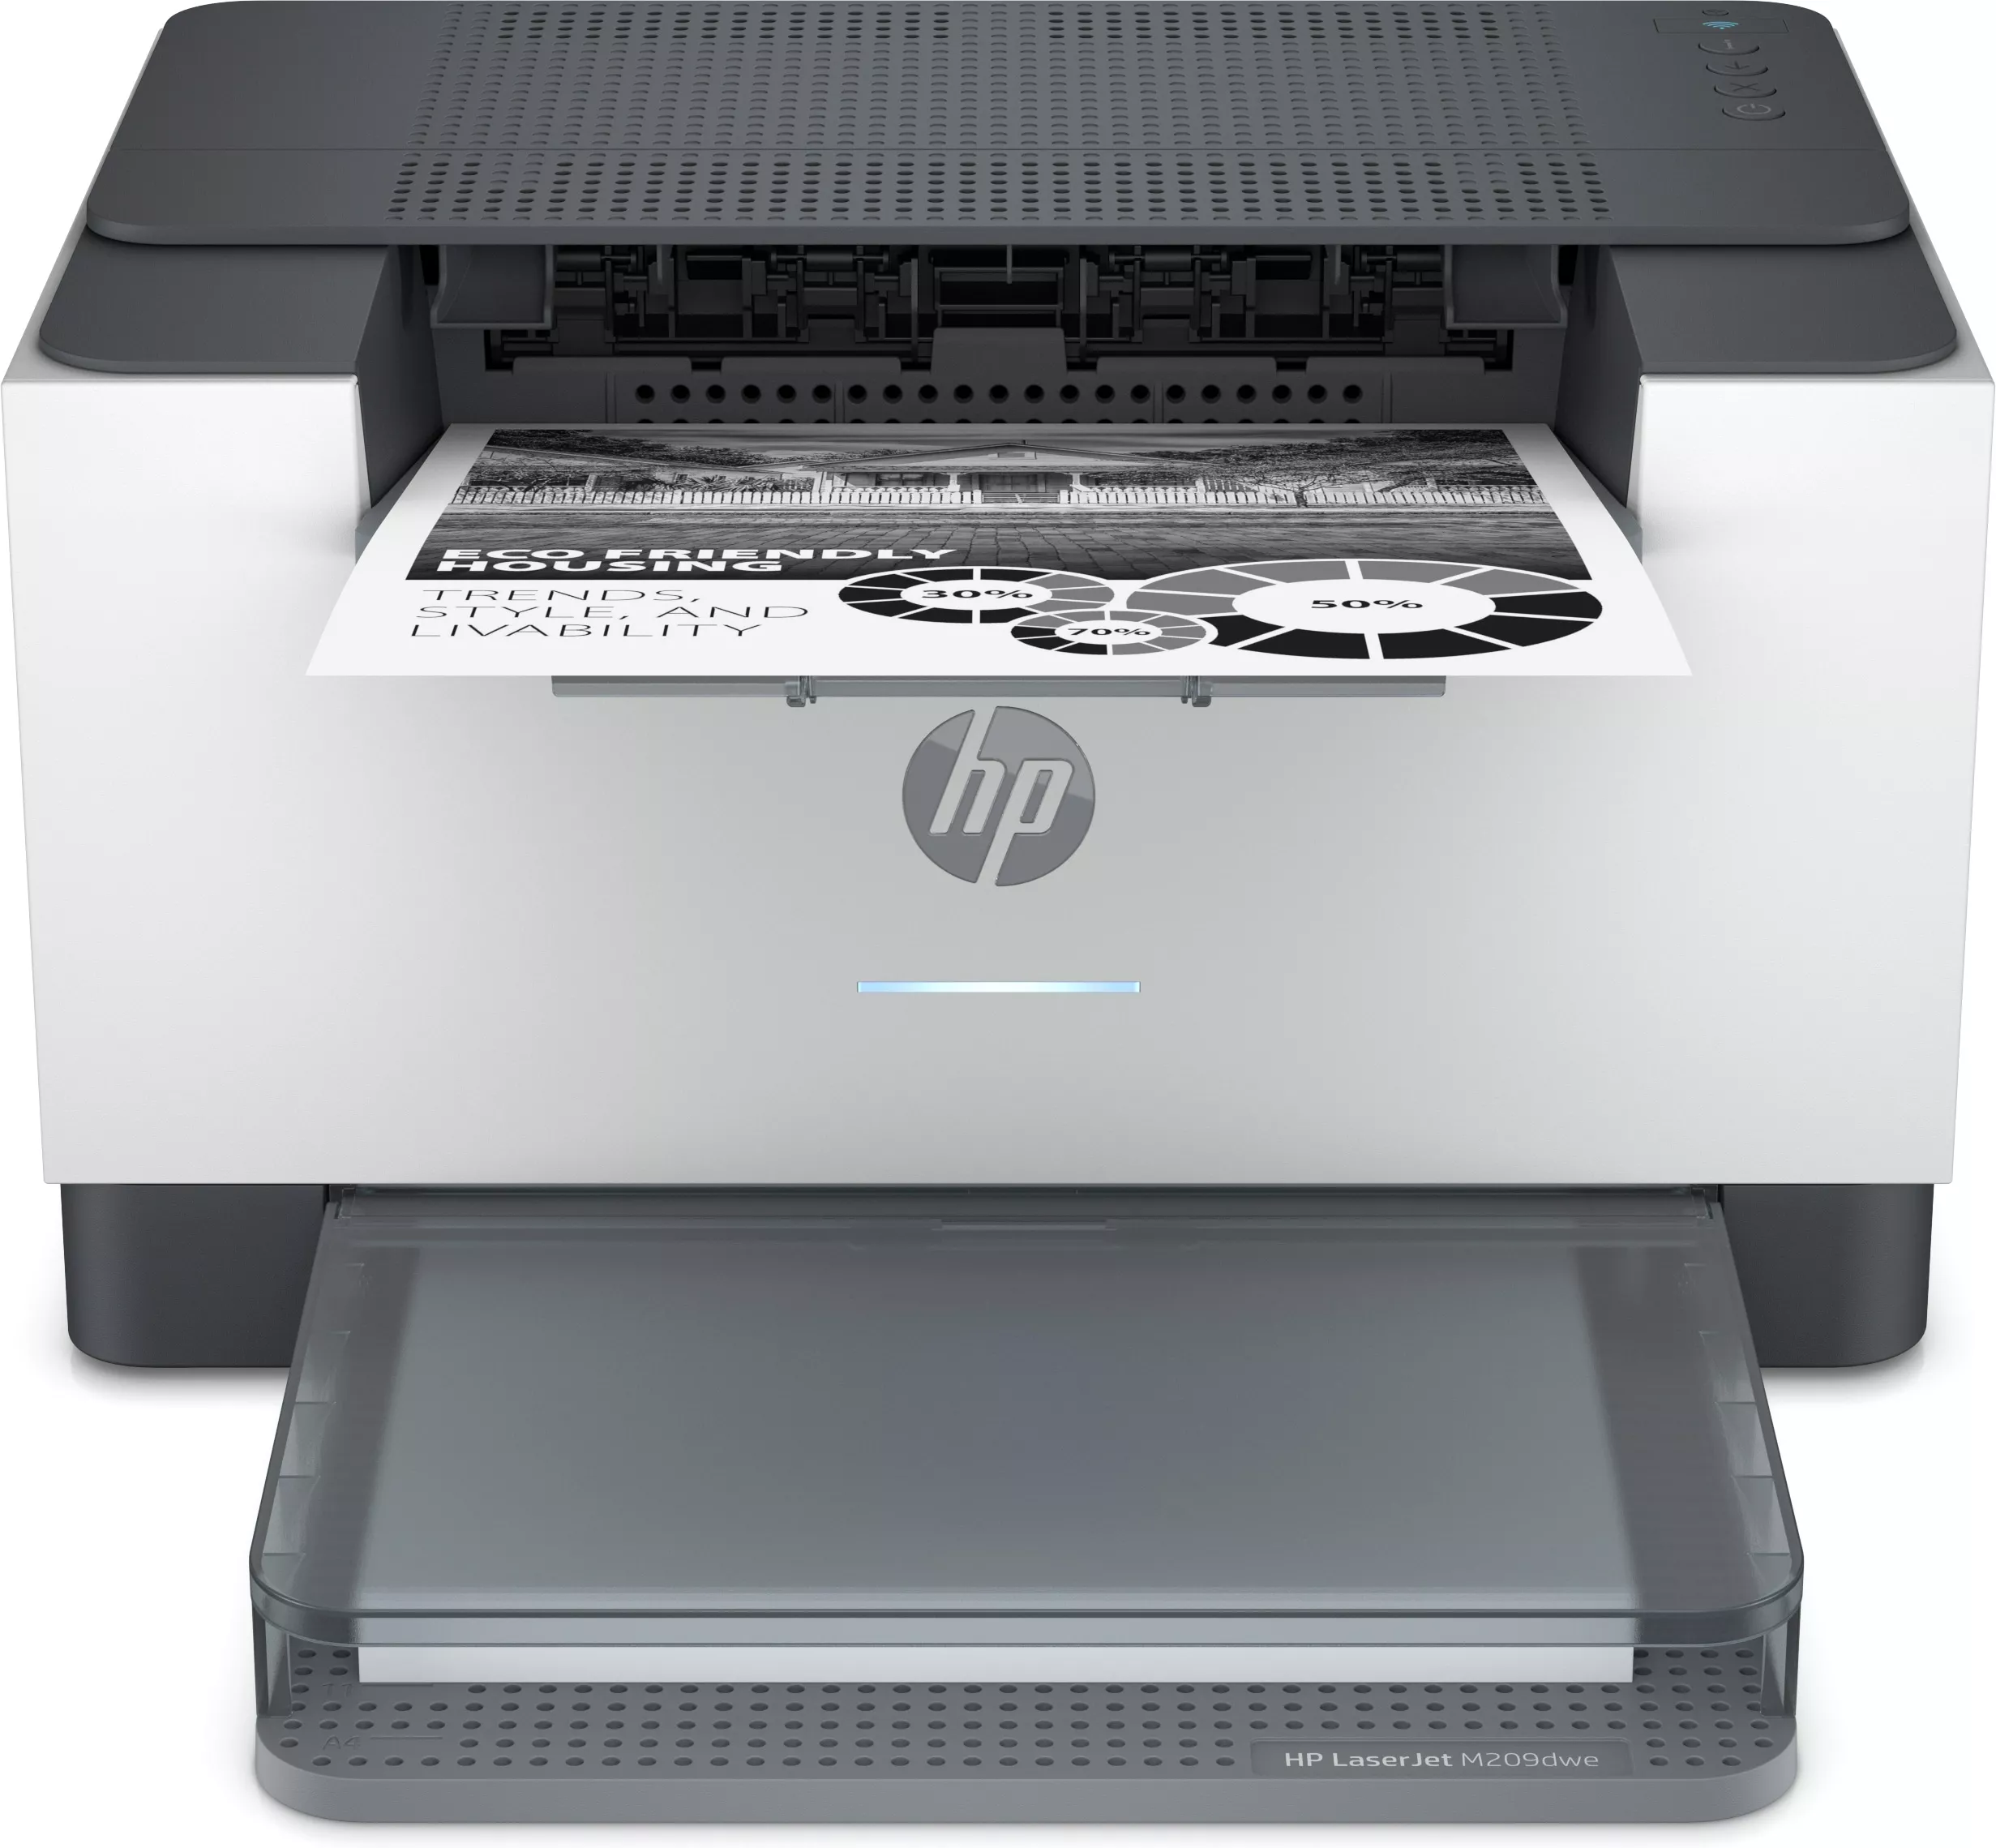 Achat Imprimante HP LaserJet M209dwe, Noir et blanc, Imprimante - 0194850822216